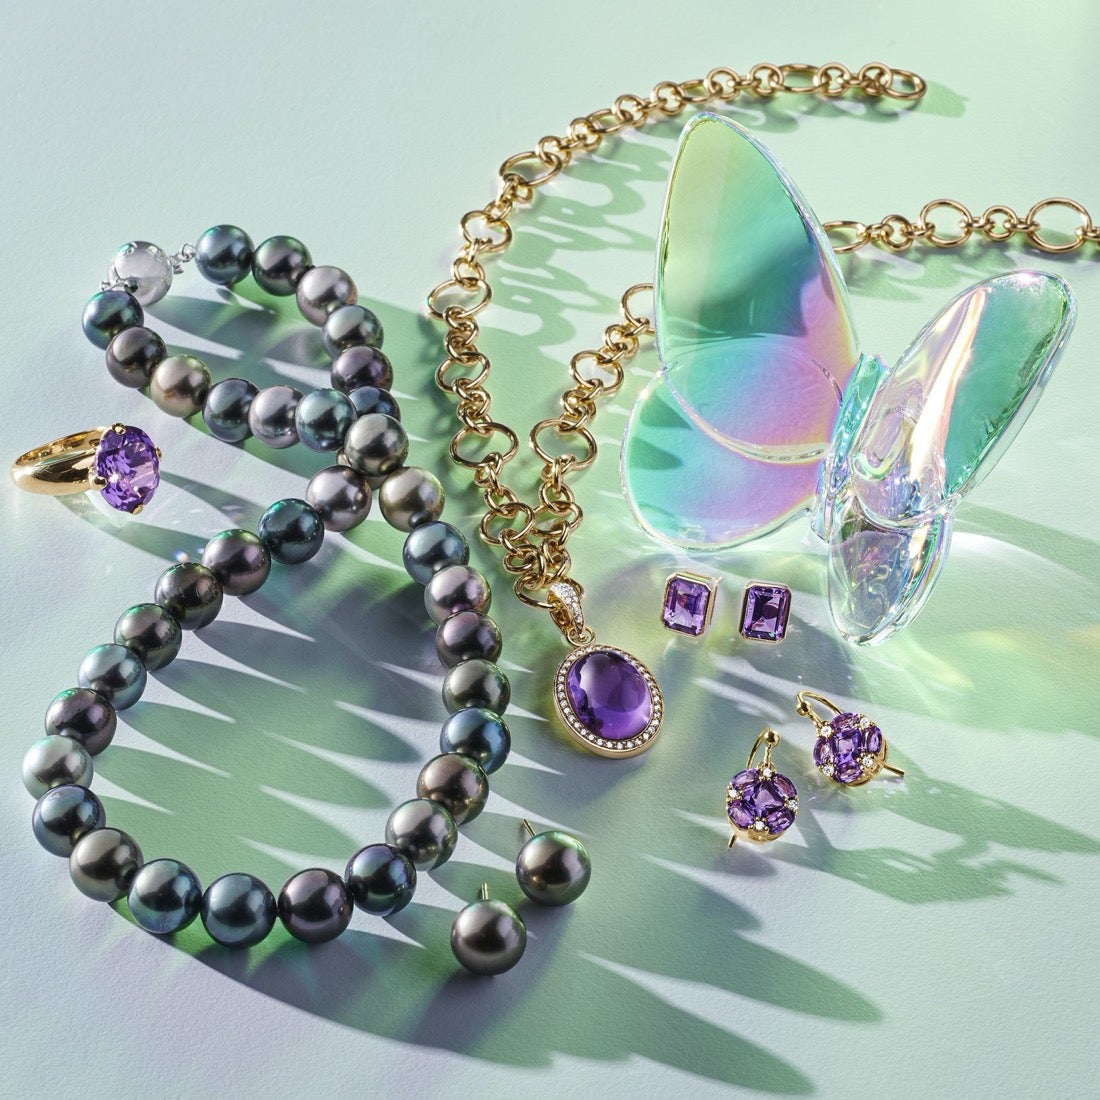 Quadrille Earrings in Amethyst & Diamonds